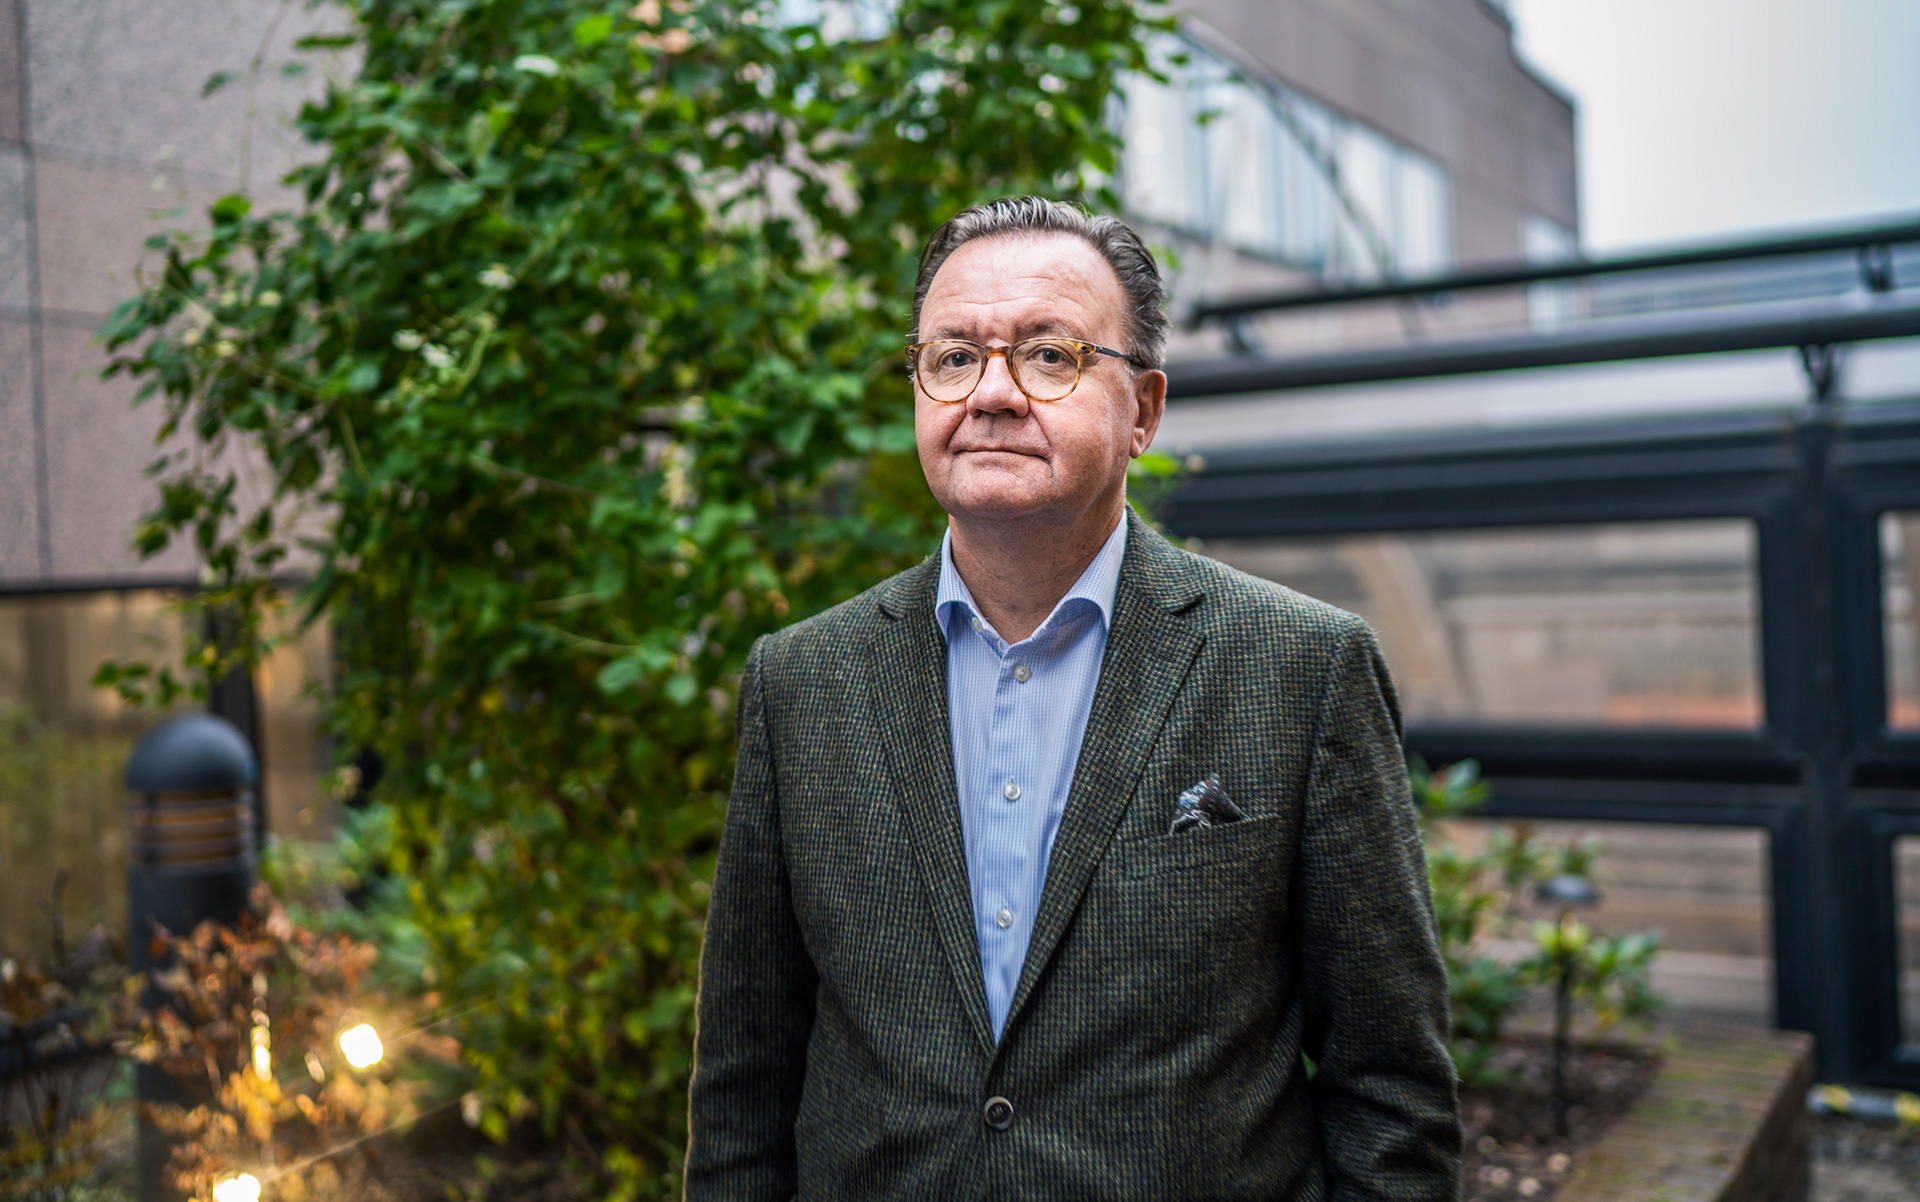 Karl-Henrik Sundström, dal 2014 CEO del gruppo finnico-svedese Stora Enso, che opera nell’industria forestale, nel settore cellulosa e carta.